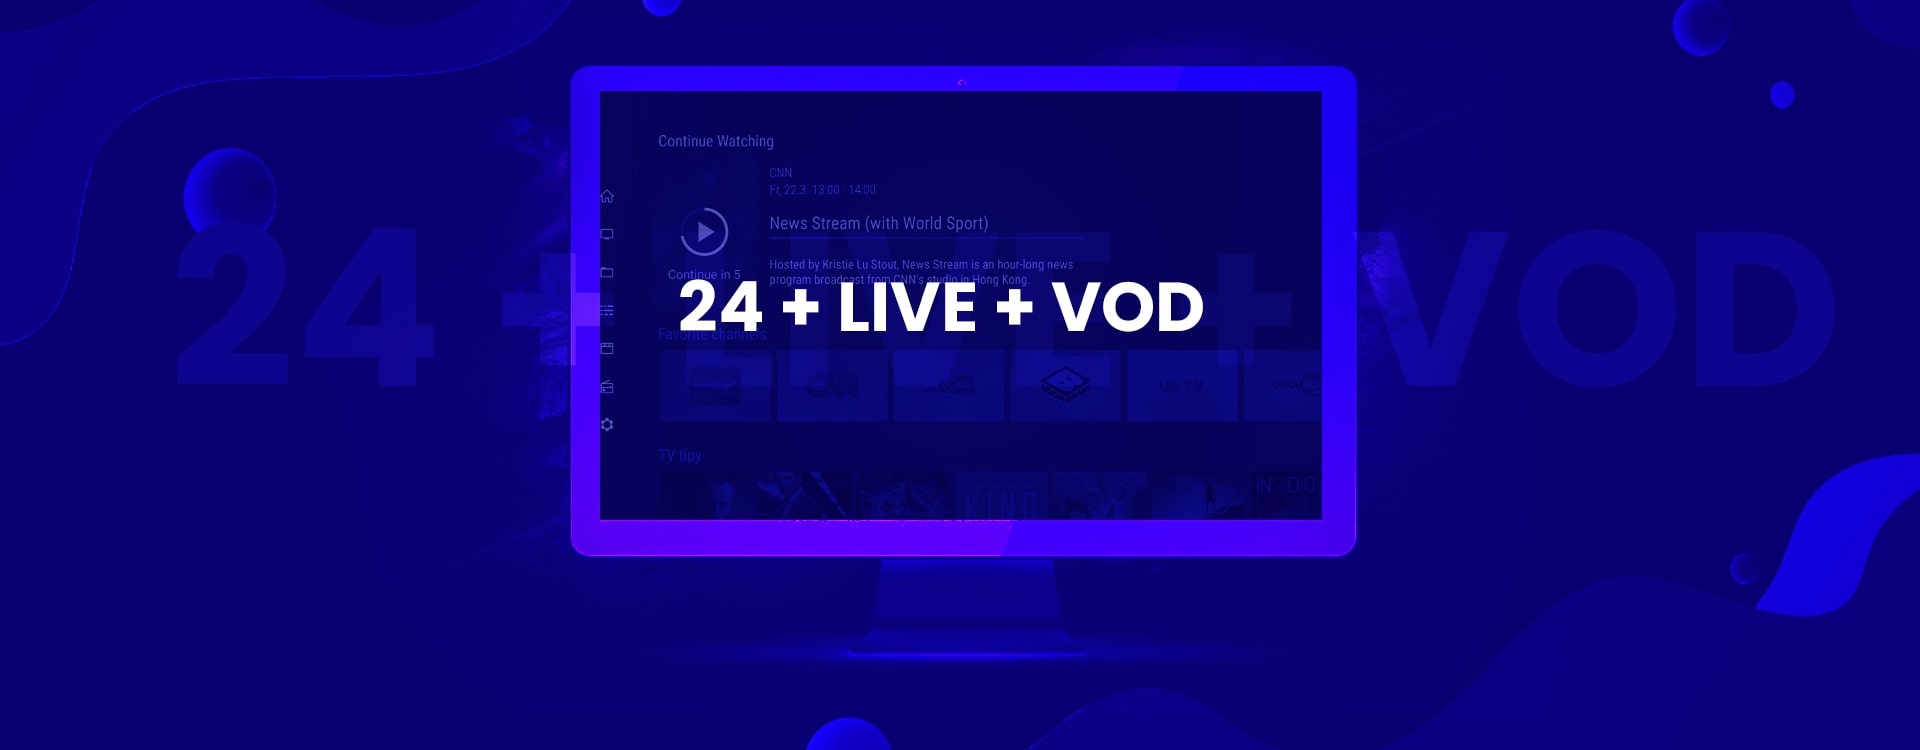 24 + Live + VOD